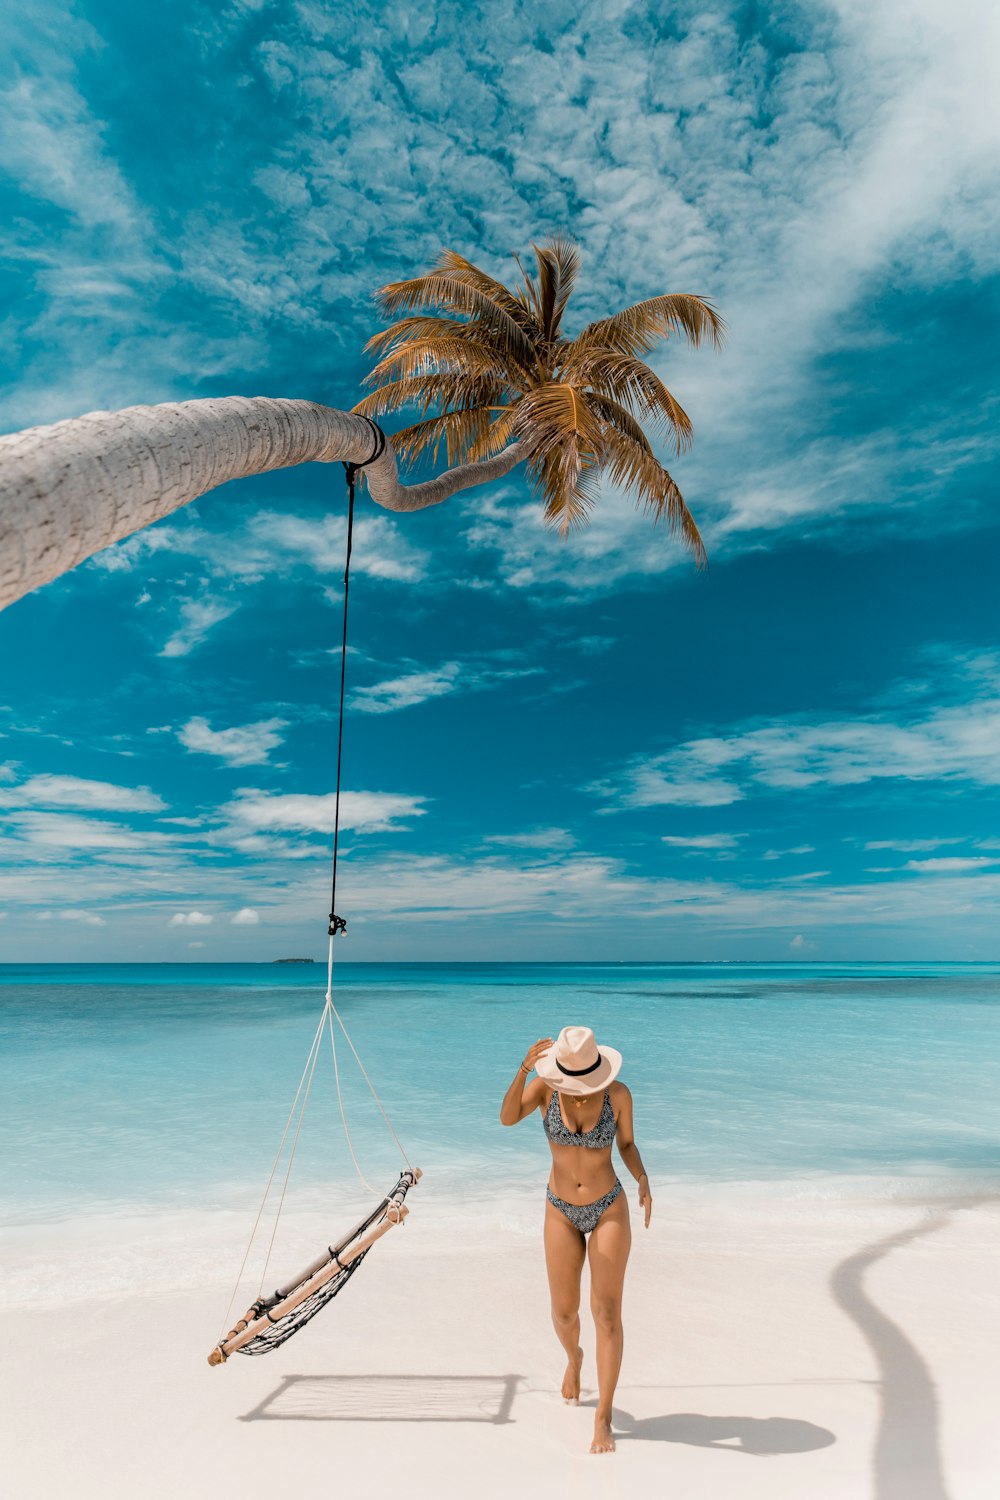 Una persona parada en una playa con una palmera y un bote